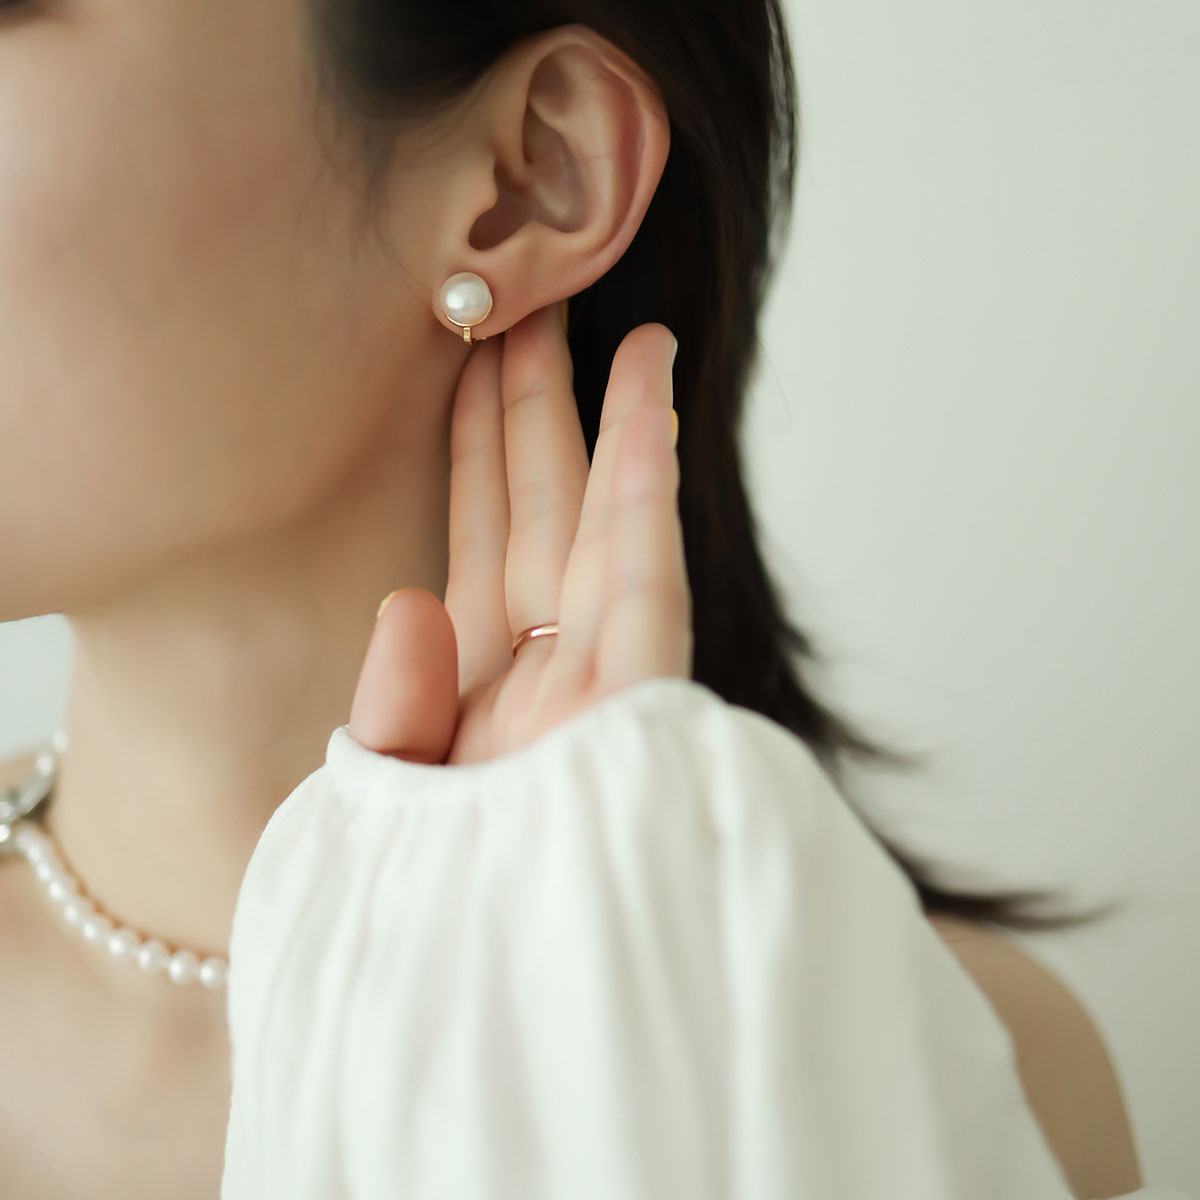 Clip on pearl earrings for women.